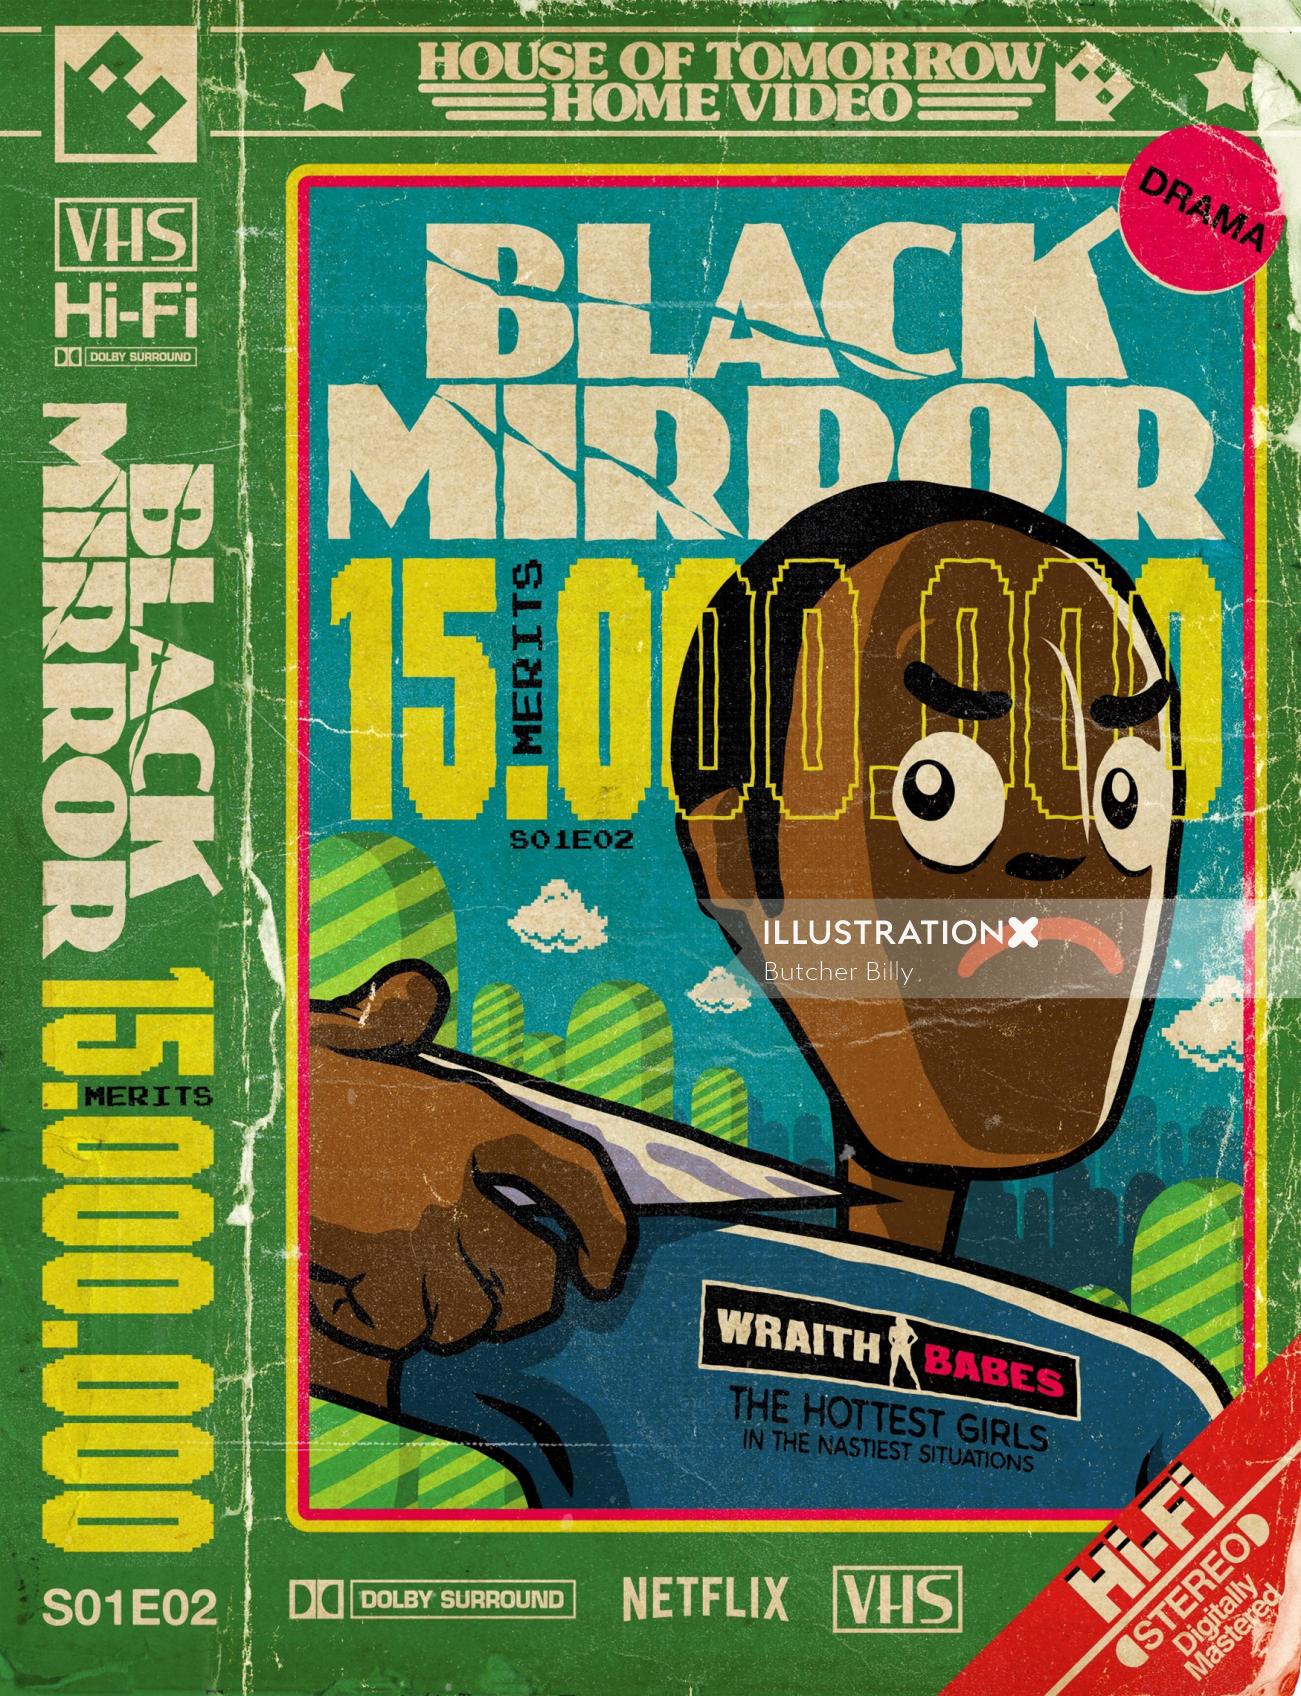 Diseño de portada para el libro Black Mirror Fifteen Million Merits